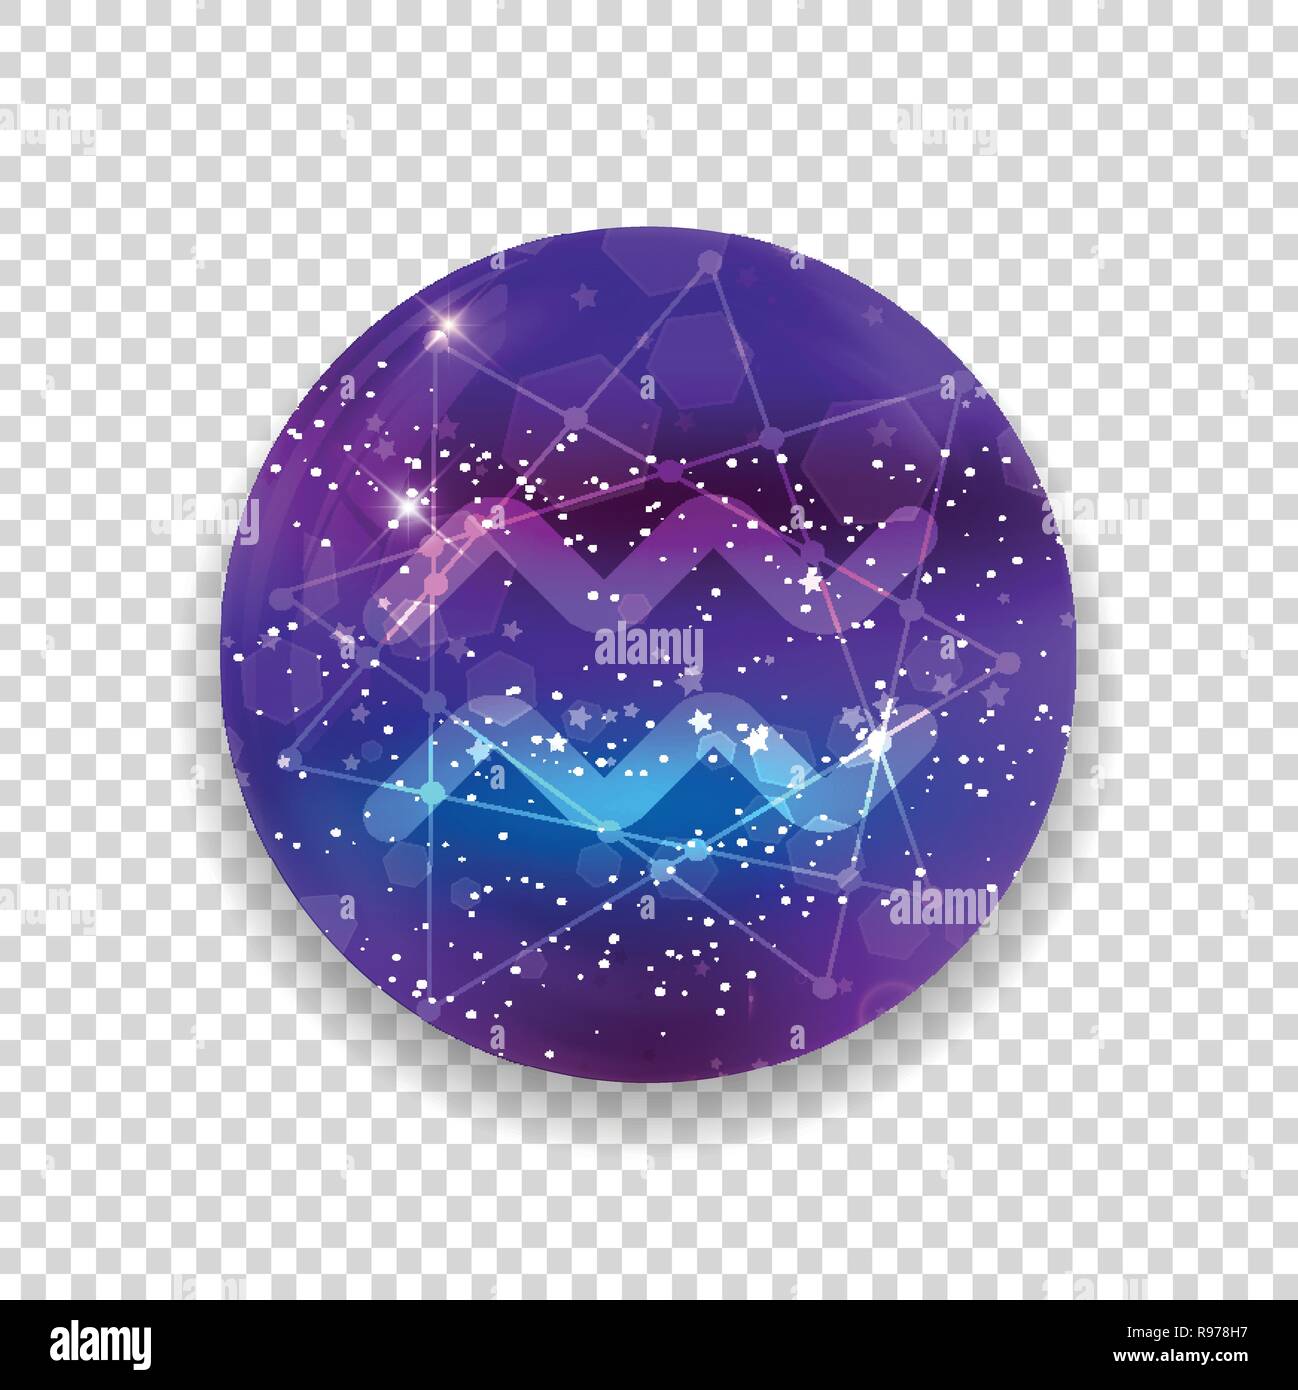 Aquarius segno zodiacale e costellazione sul cosmica cielo viola con stelle luccicanti e nebula isolato su sfondo trasparente. Vettore icona al neon, web Illustrazione Vettoriale